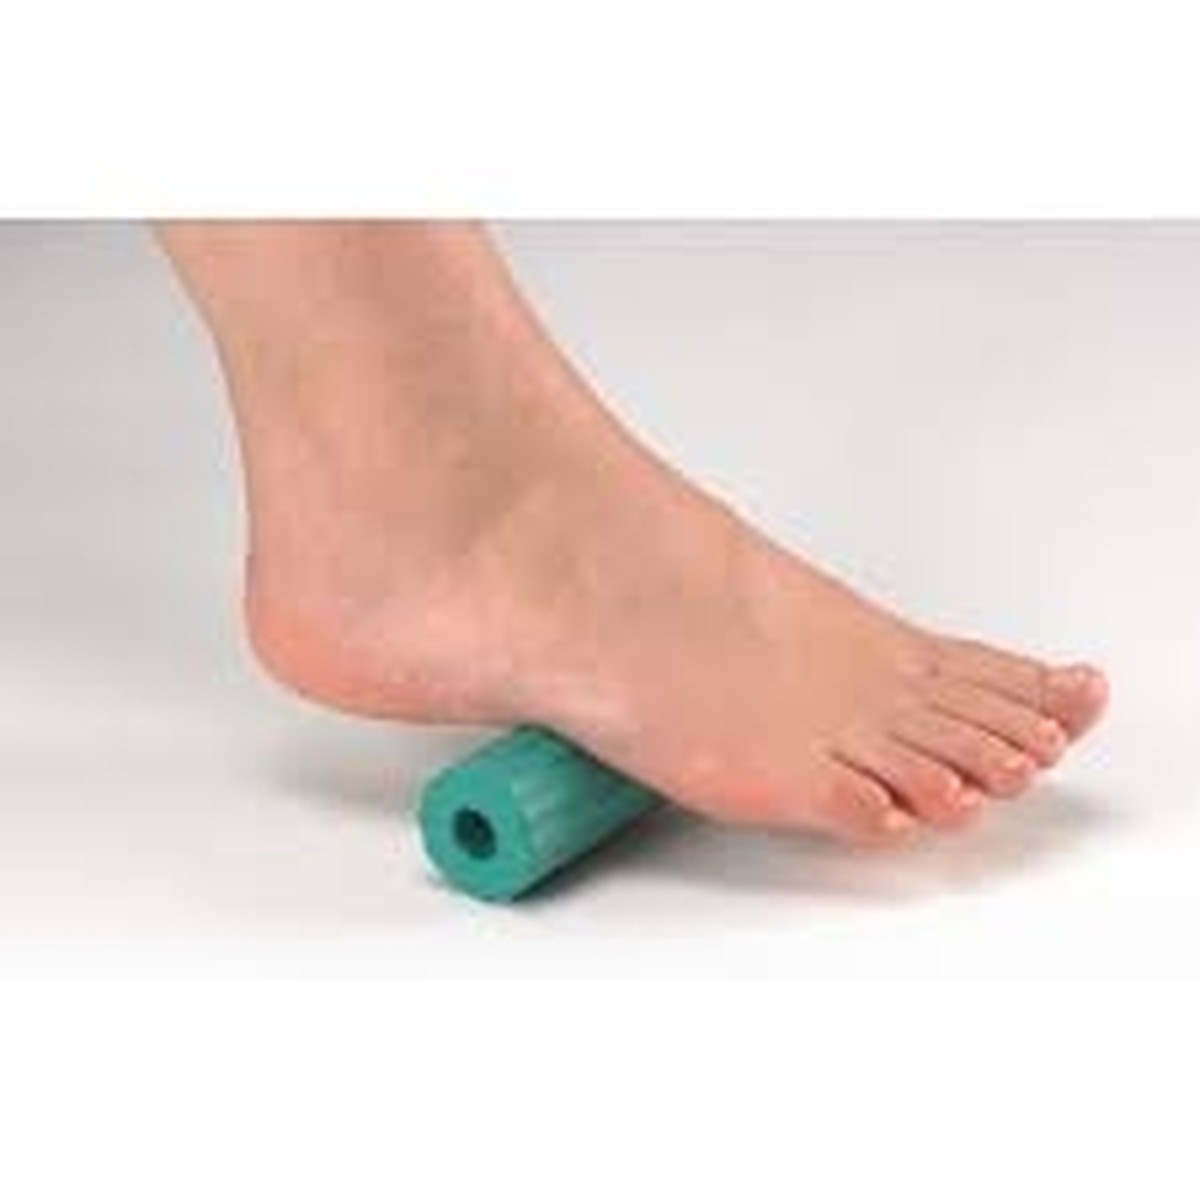 Foto do produto Rolo para os pés Foot Roller